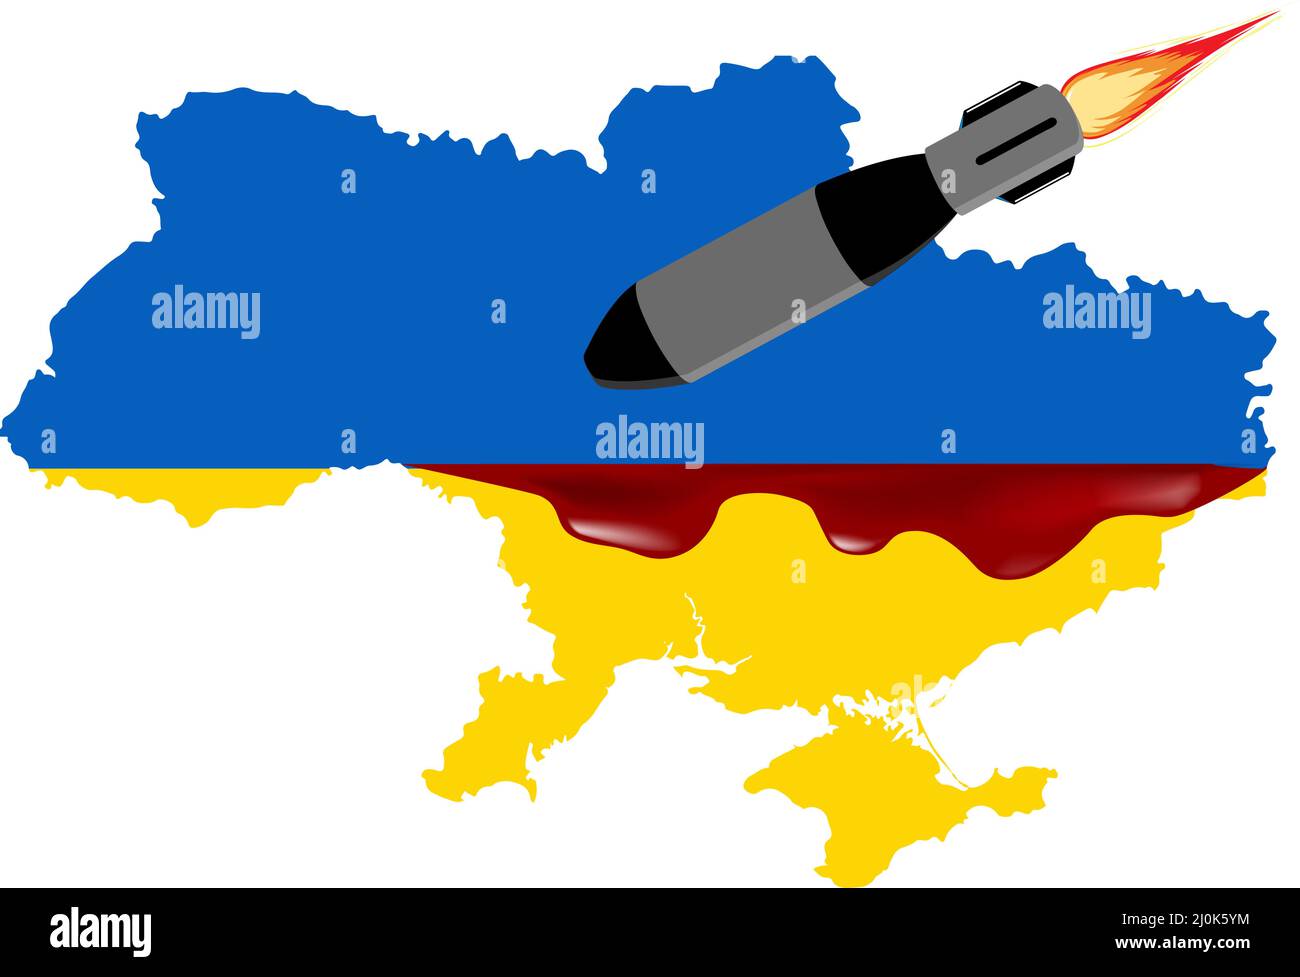 Des missiles russes frappent des villes ukrainiennes. Arrêter l'invasion russe, arrêter la guerre Illustration de Vecteur